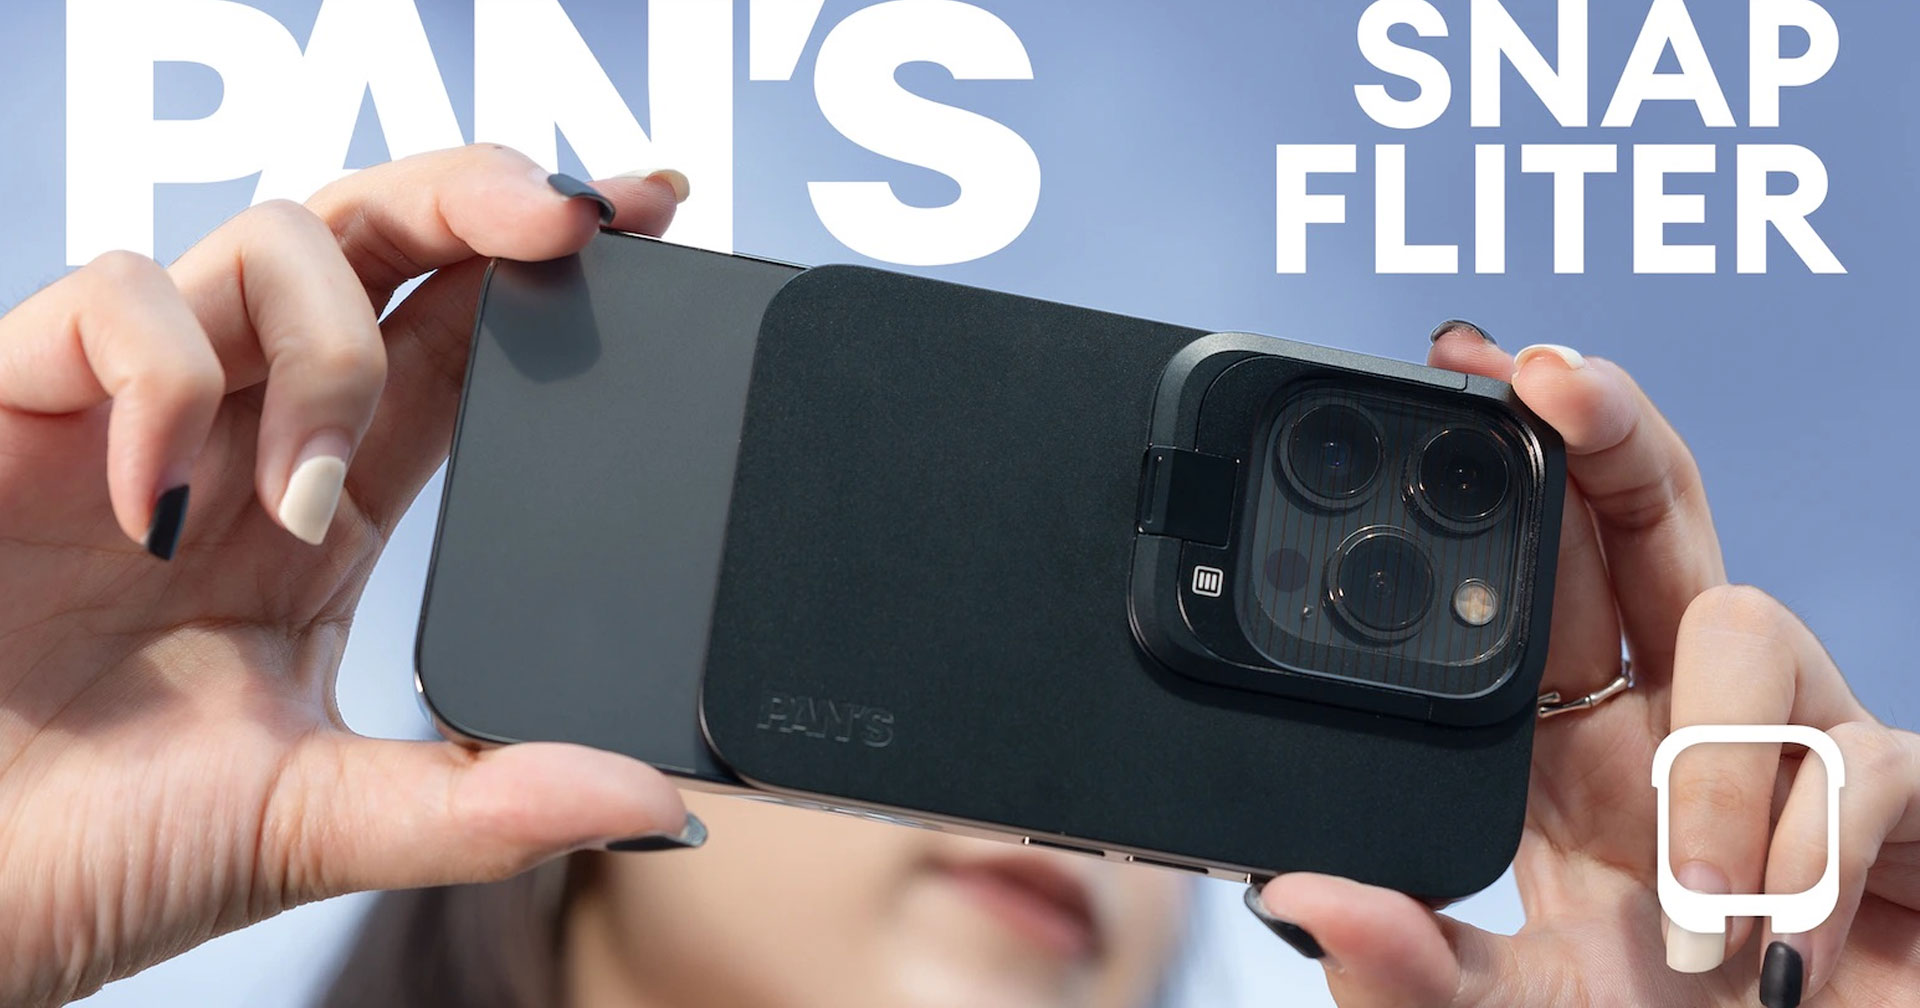 Snap Filter ฟิลเตอร์สุดล้ำติดบน iPhone ด้วย MagSafe สำหรับสายถ่ายภาพและวิดีโอที่จริงจัง!